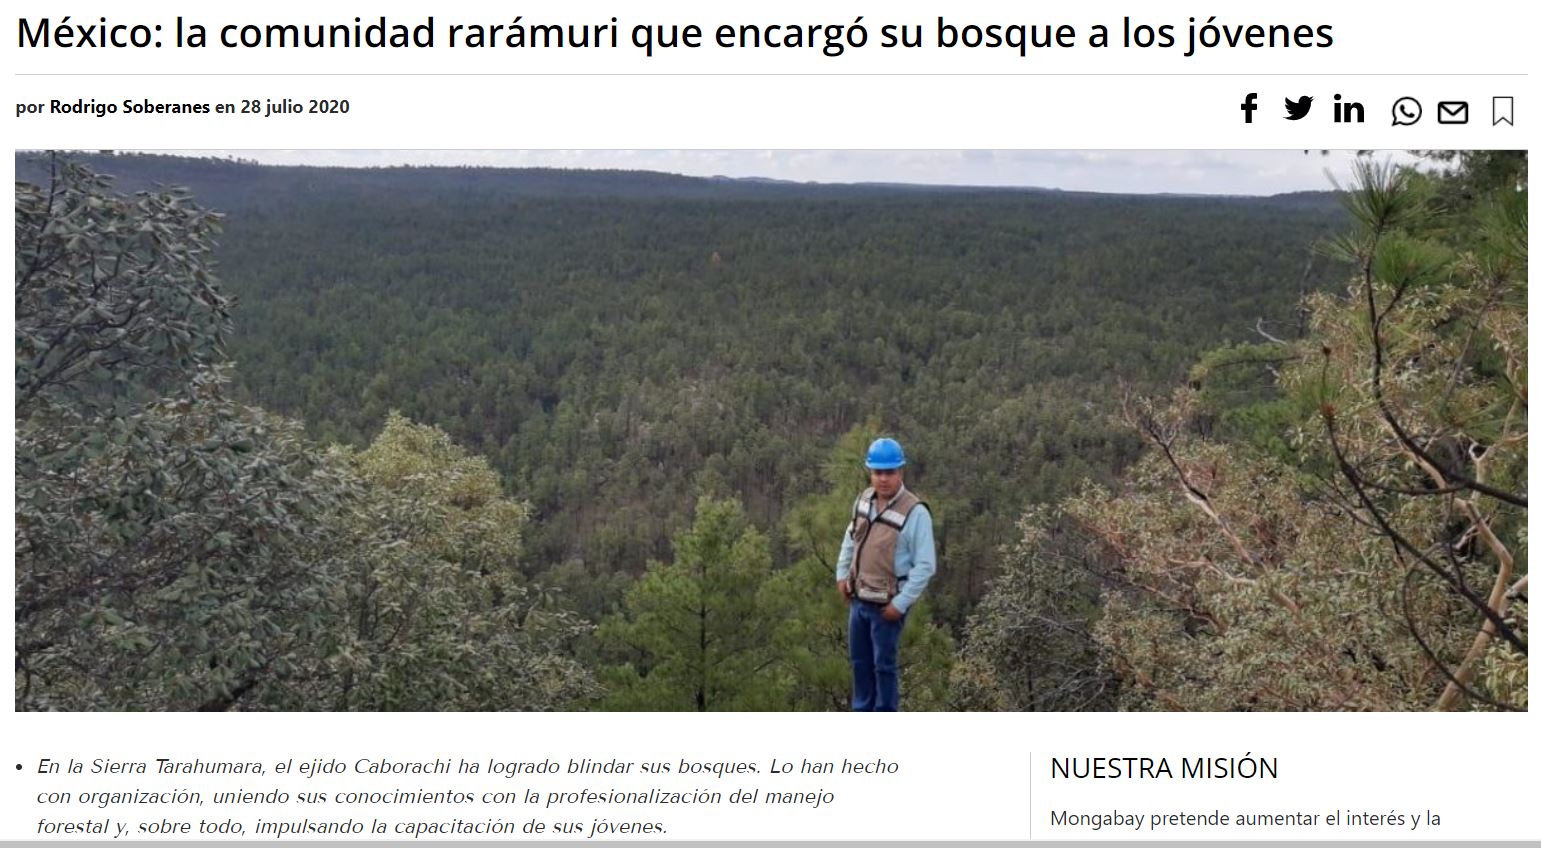 México: la comunidad rarámuri que encargó su bosque a los jóvenes